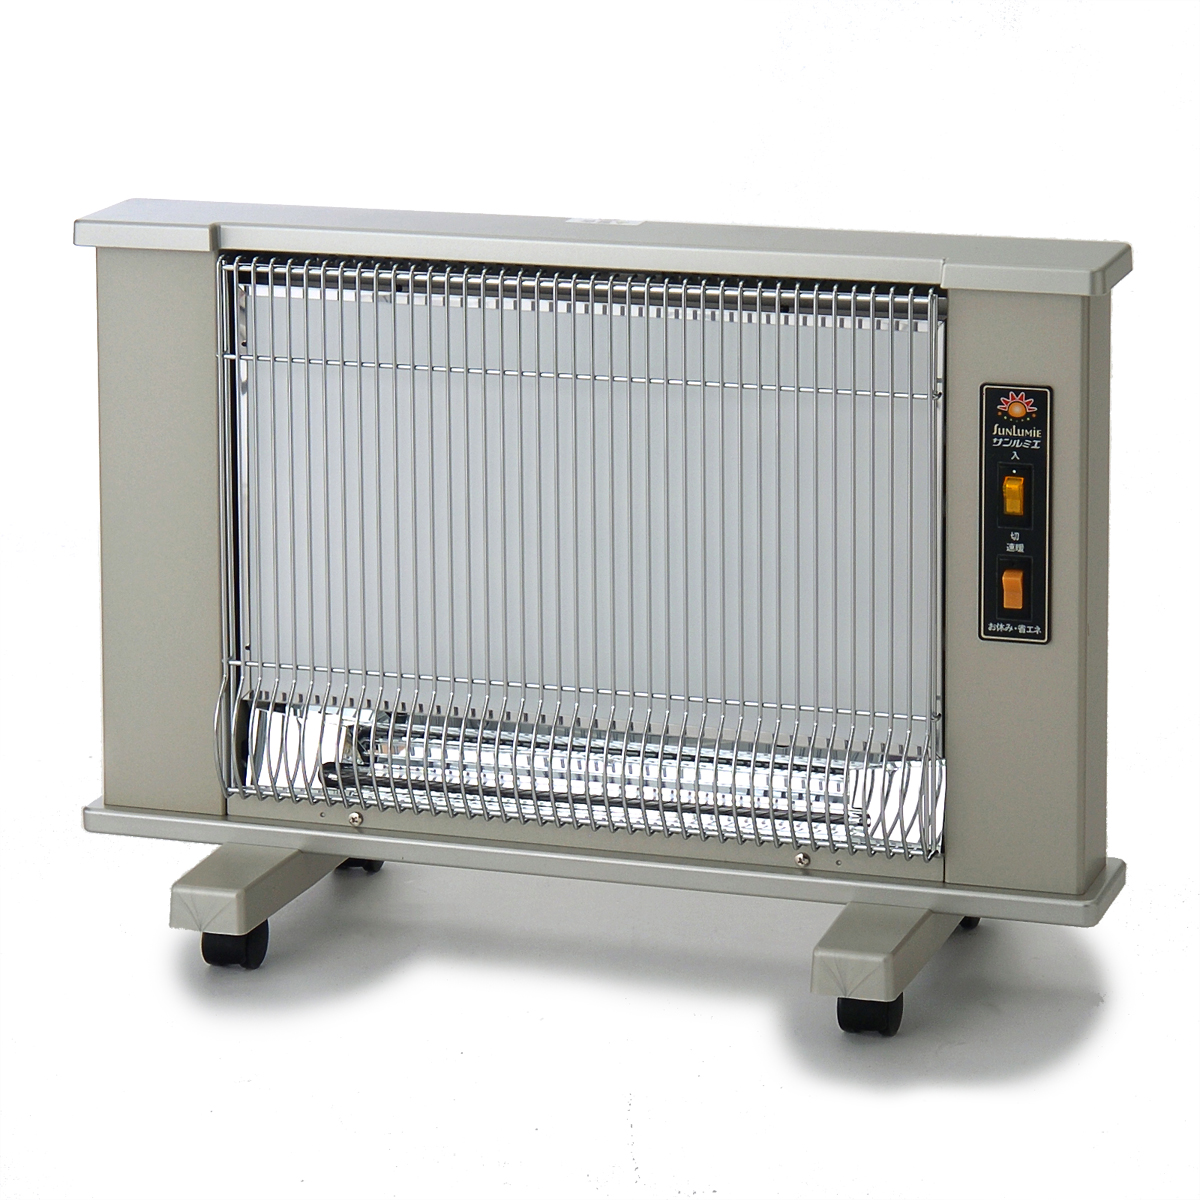 遠赤外線暖房器 サンルミエ 暖炉型速暖 - QVC.jp